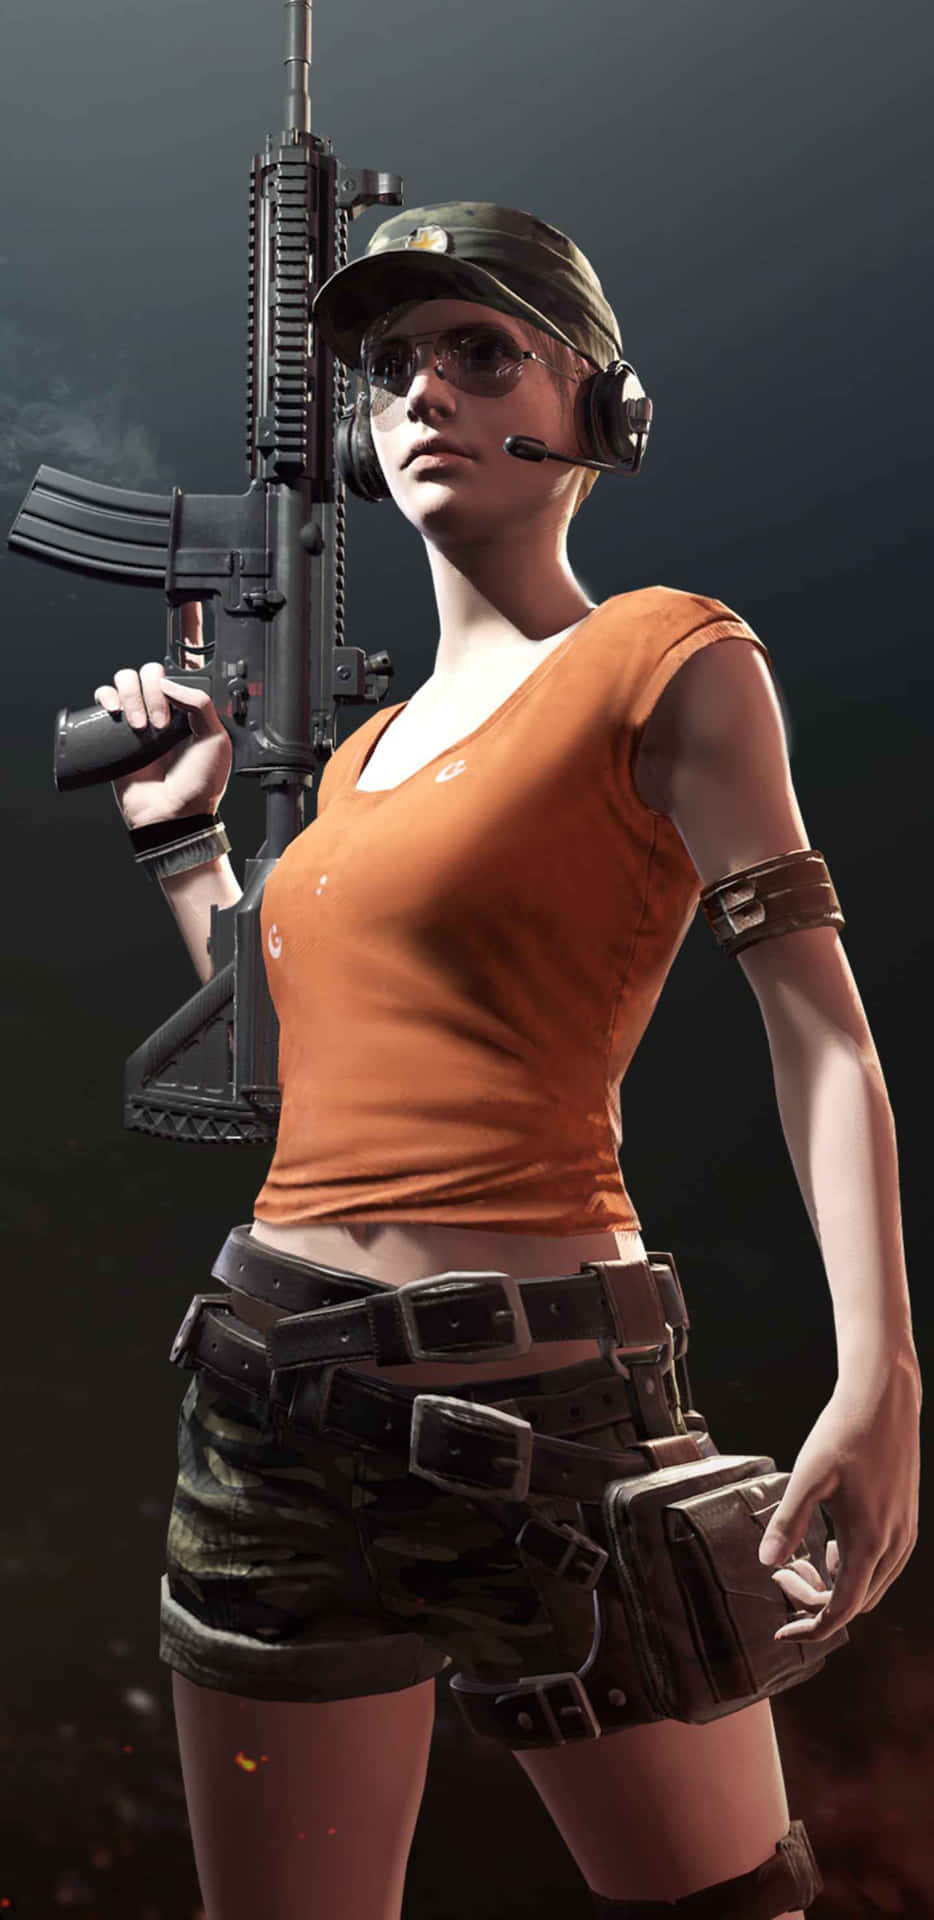 Pixel3xl Playerunknown's Battlegrounds Hintergrund Bewaffnete Frau Oranges Shirt